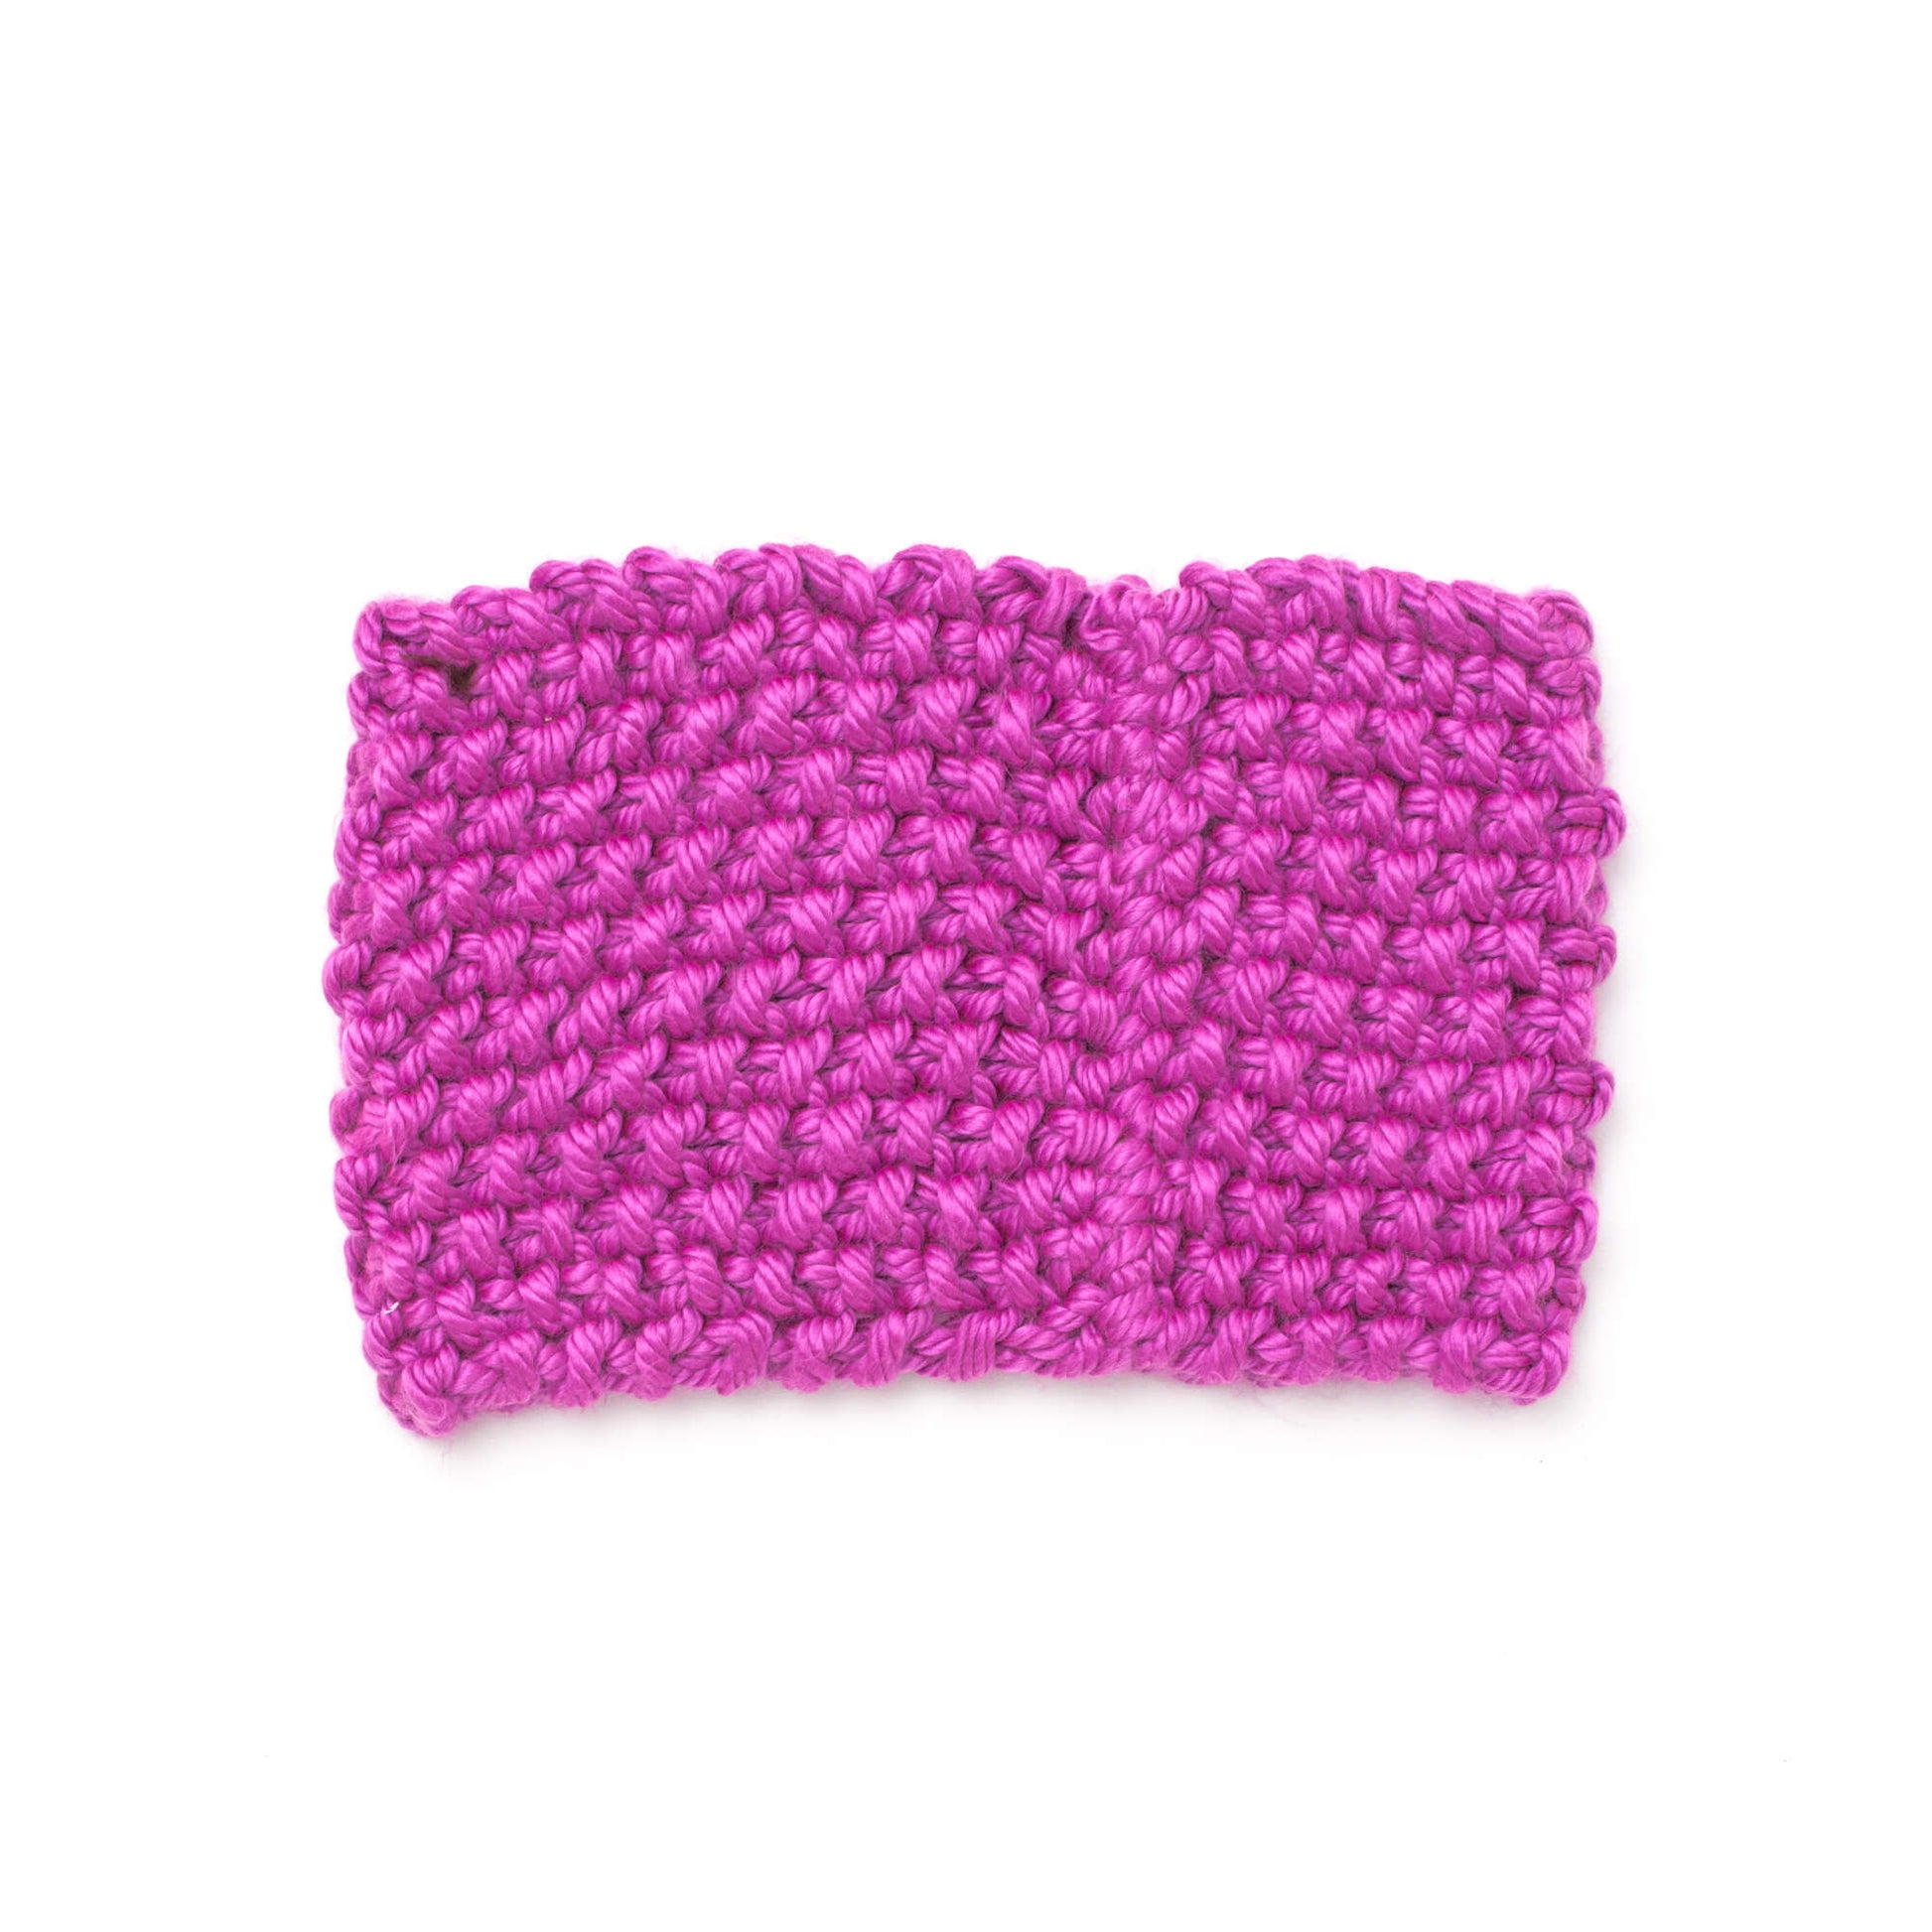 Free Bernat Knit Super Size Seed Stitch Cowl Pattern